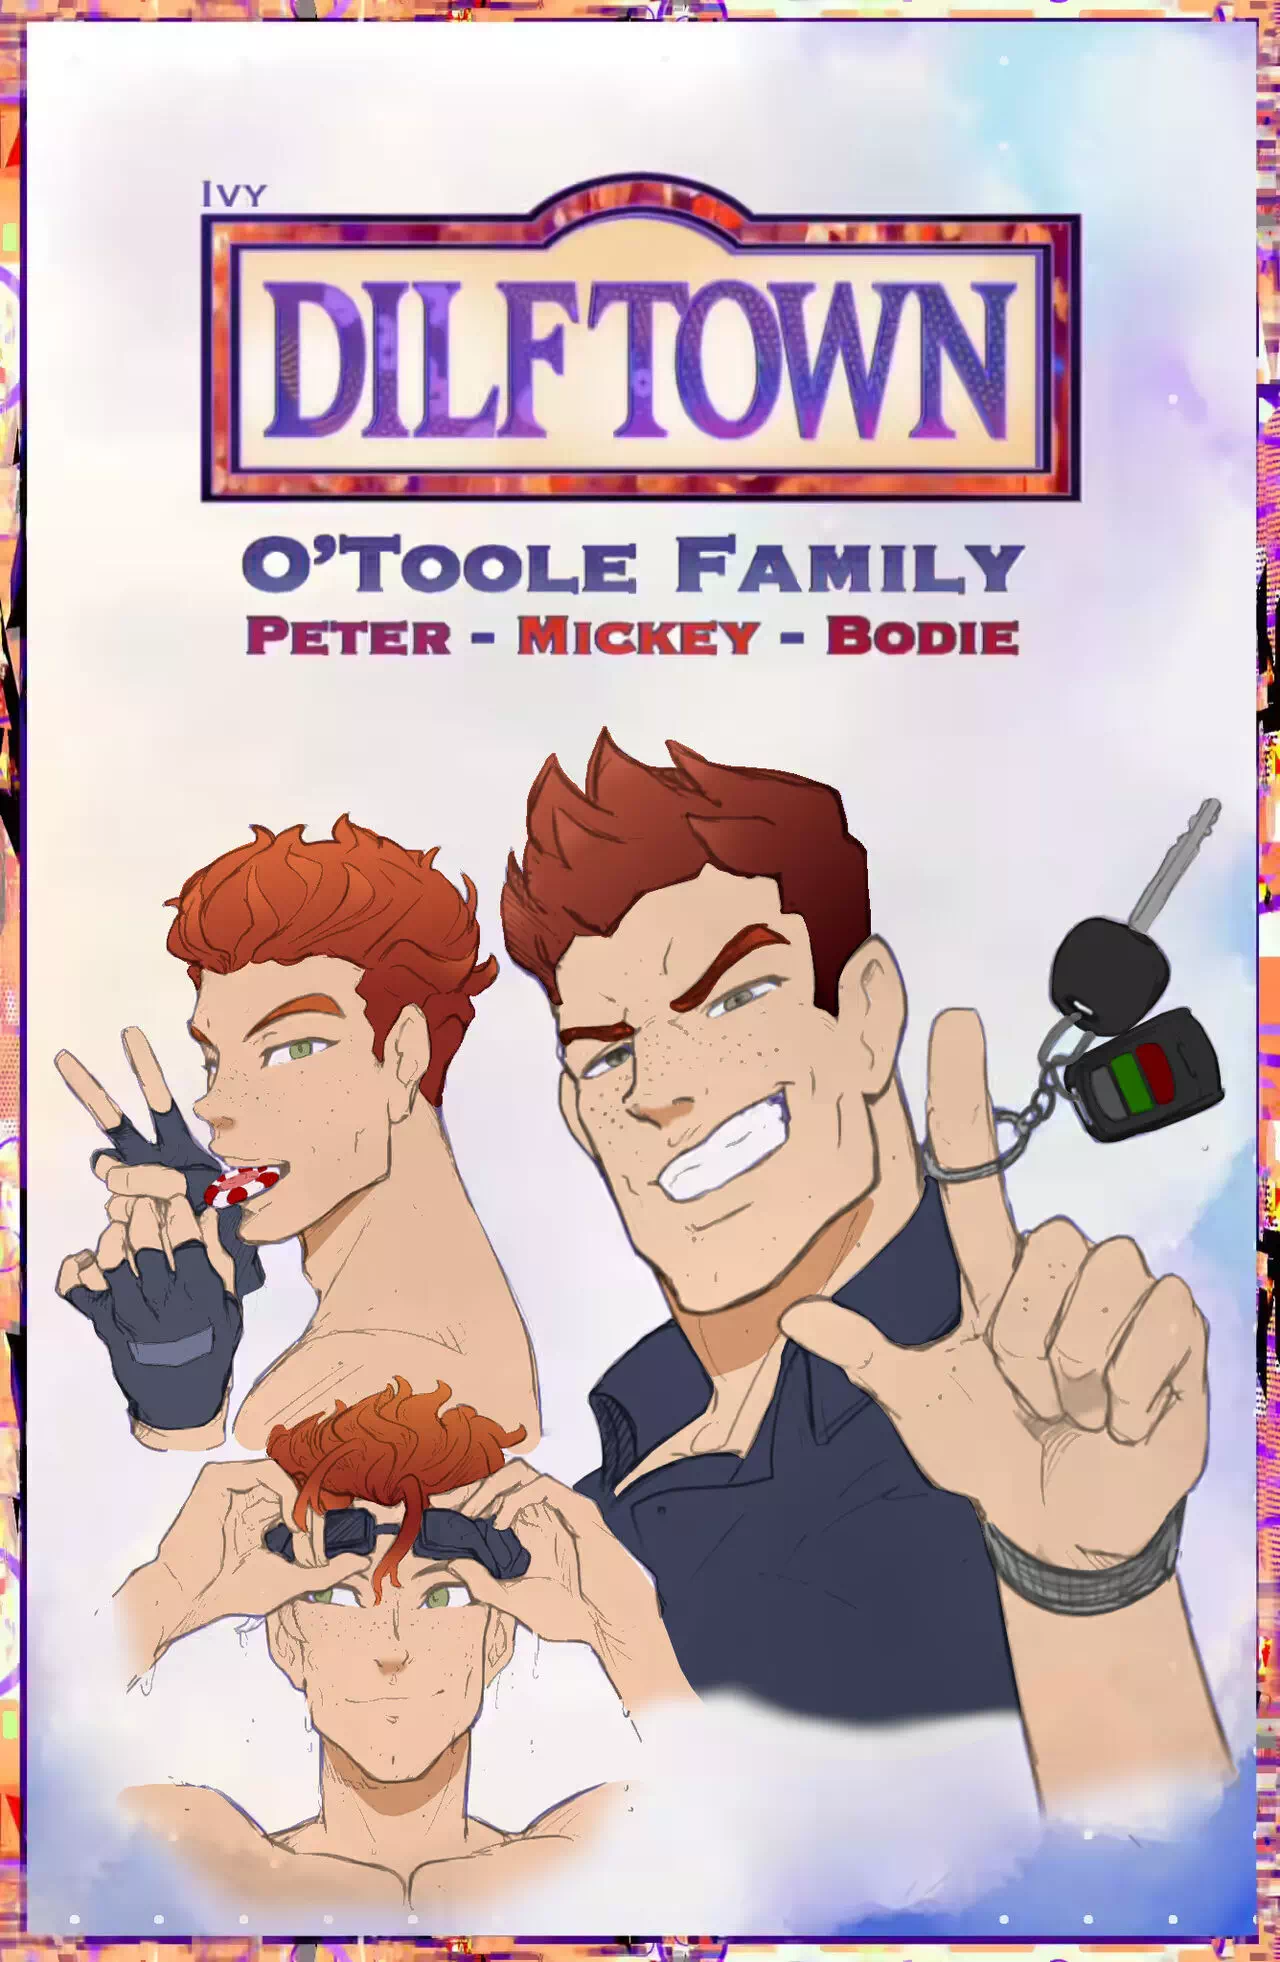 Yaoi porn comics Dilftown - O'Toole Family